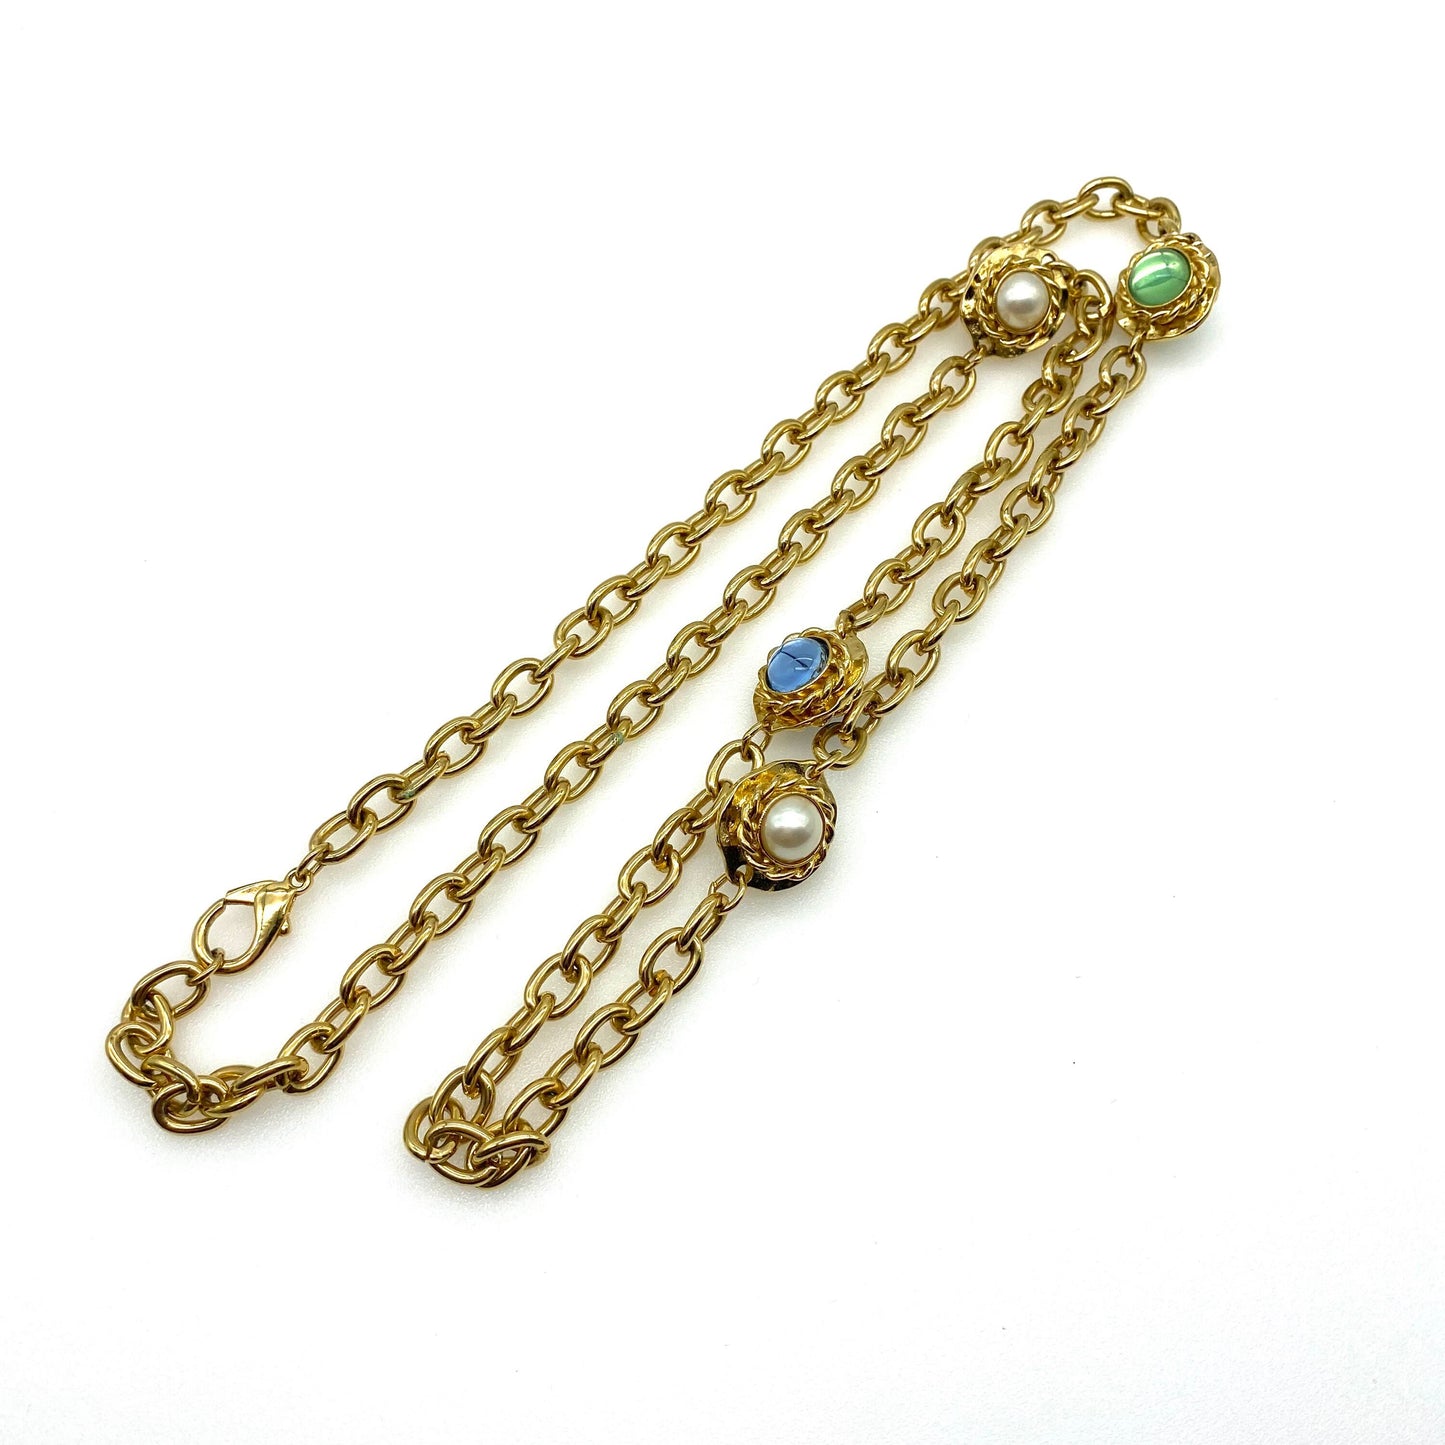 Collier de chaîne inspiré de Gripoix vintage non signé avec cabochons en verre et perles d’imitation étrusques